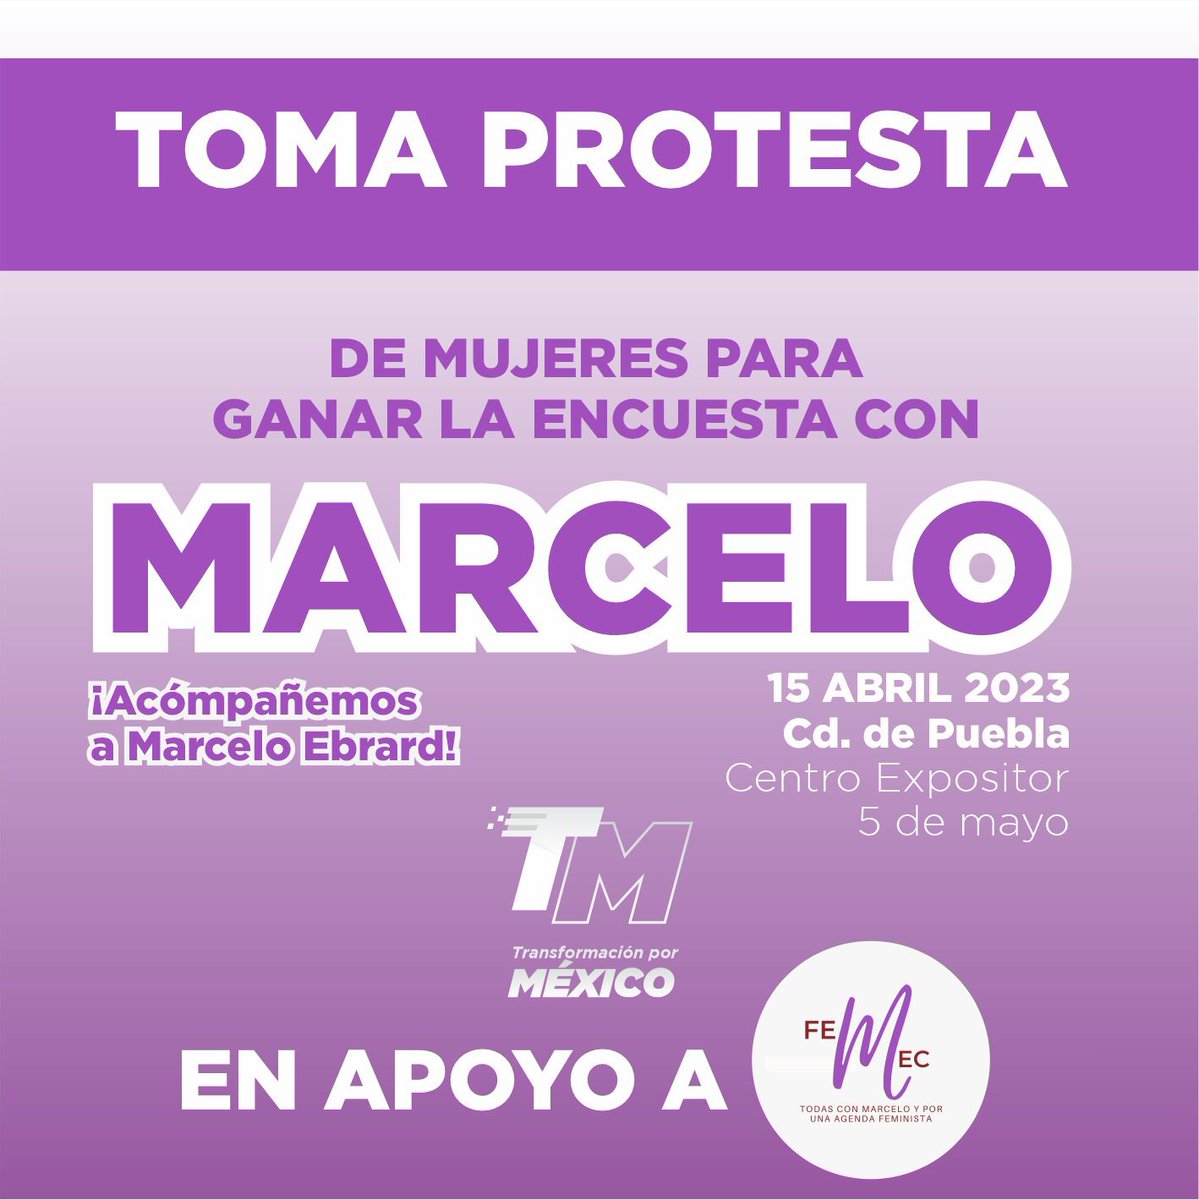 Mañana #MarceloEbrard tomara protesta a miles de mujeres, en el Centro Expositor de Puebla. Tod@s están convocad@s.
Hora🕑 12:00P.M.
#TransformaciónPorMéxico  #Femec #ConMarceloSi #TlaxcalaConMarcelo #PueblaConMarcelo #FeministasConMarcelo #MujeresConMarcelo #TodesConMarcelo